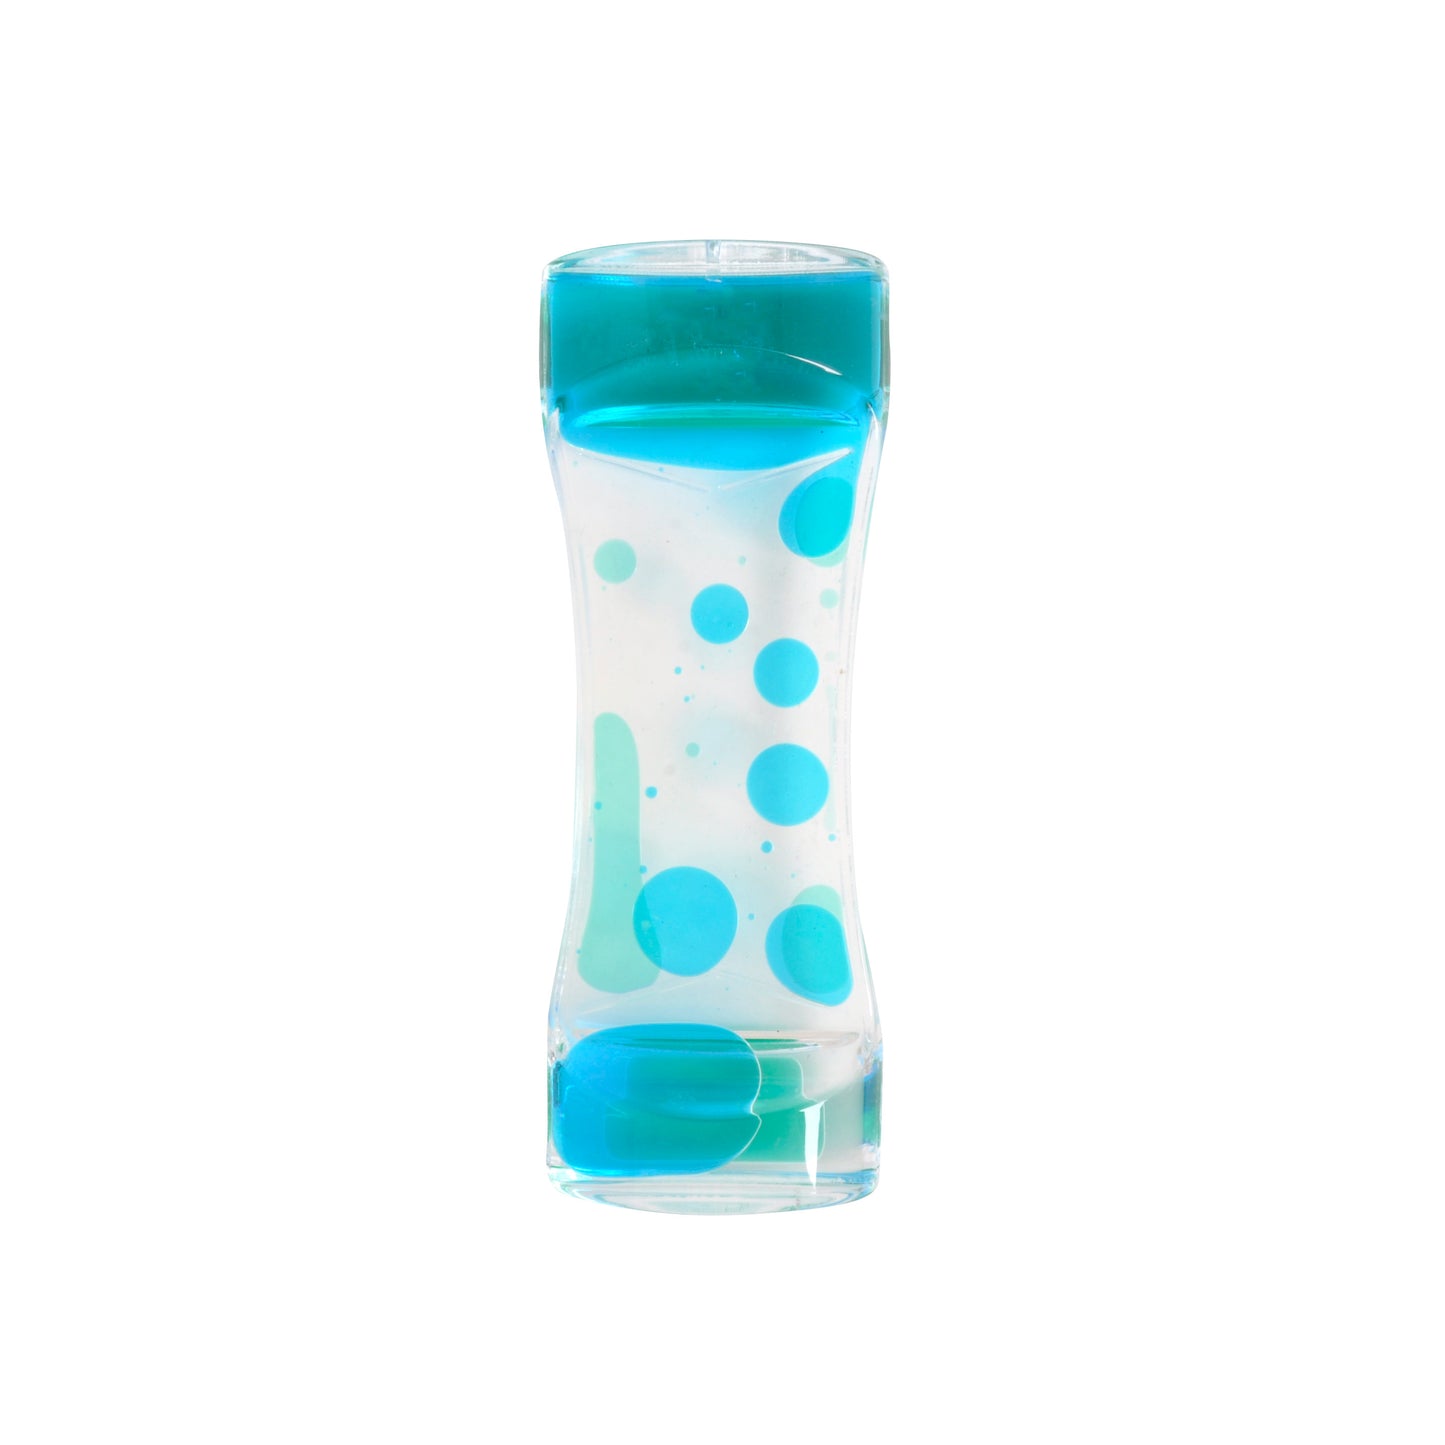 KaiserKids Sensory Water Toy - GREEN/BLUE